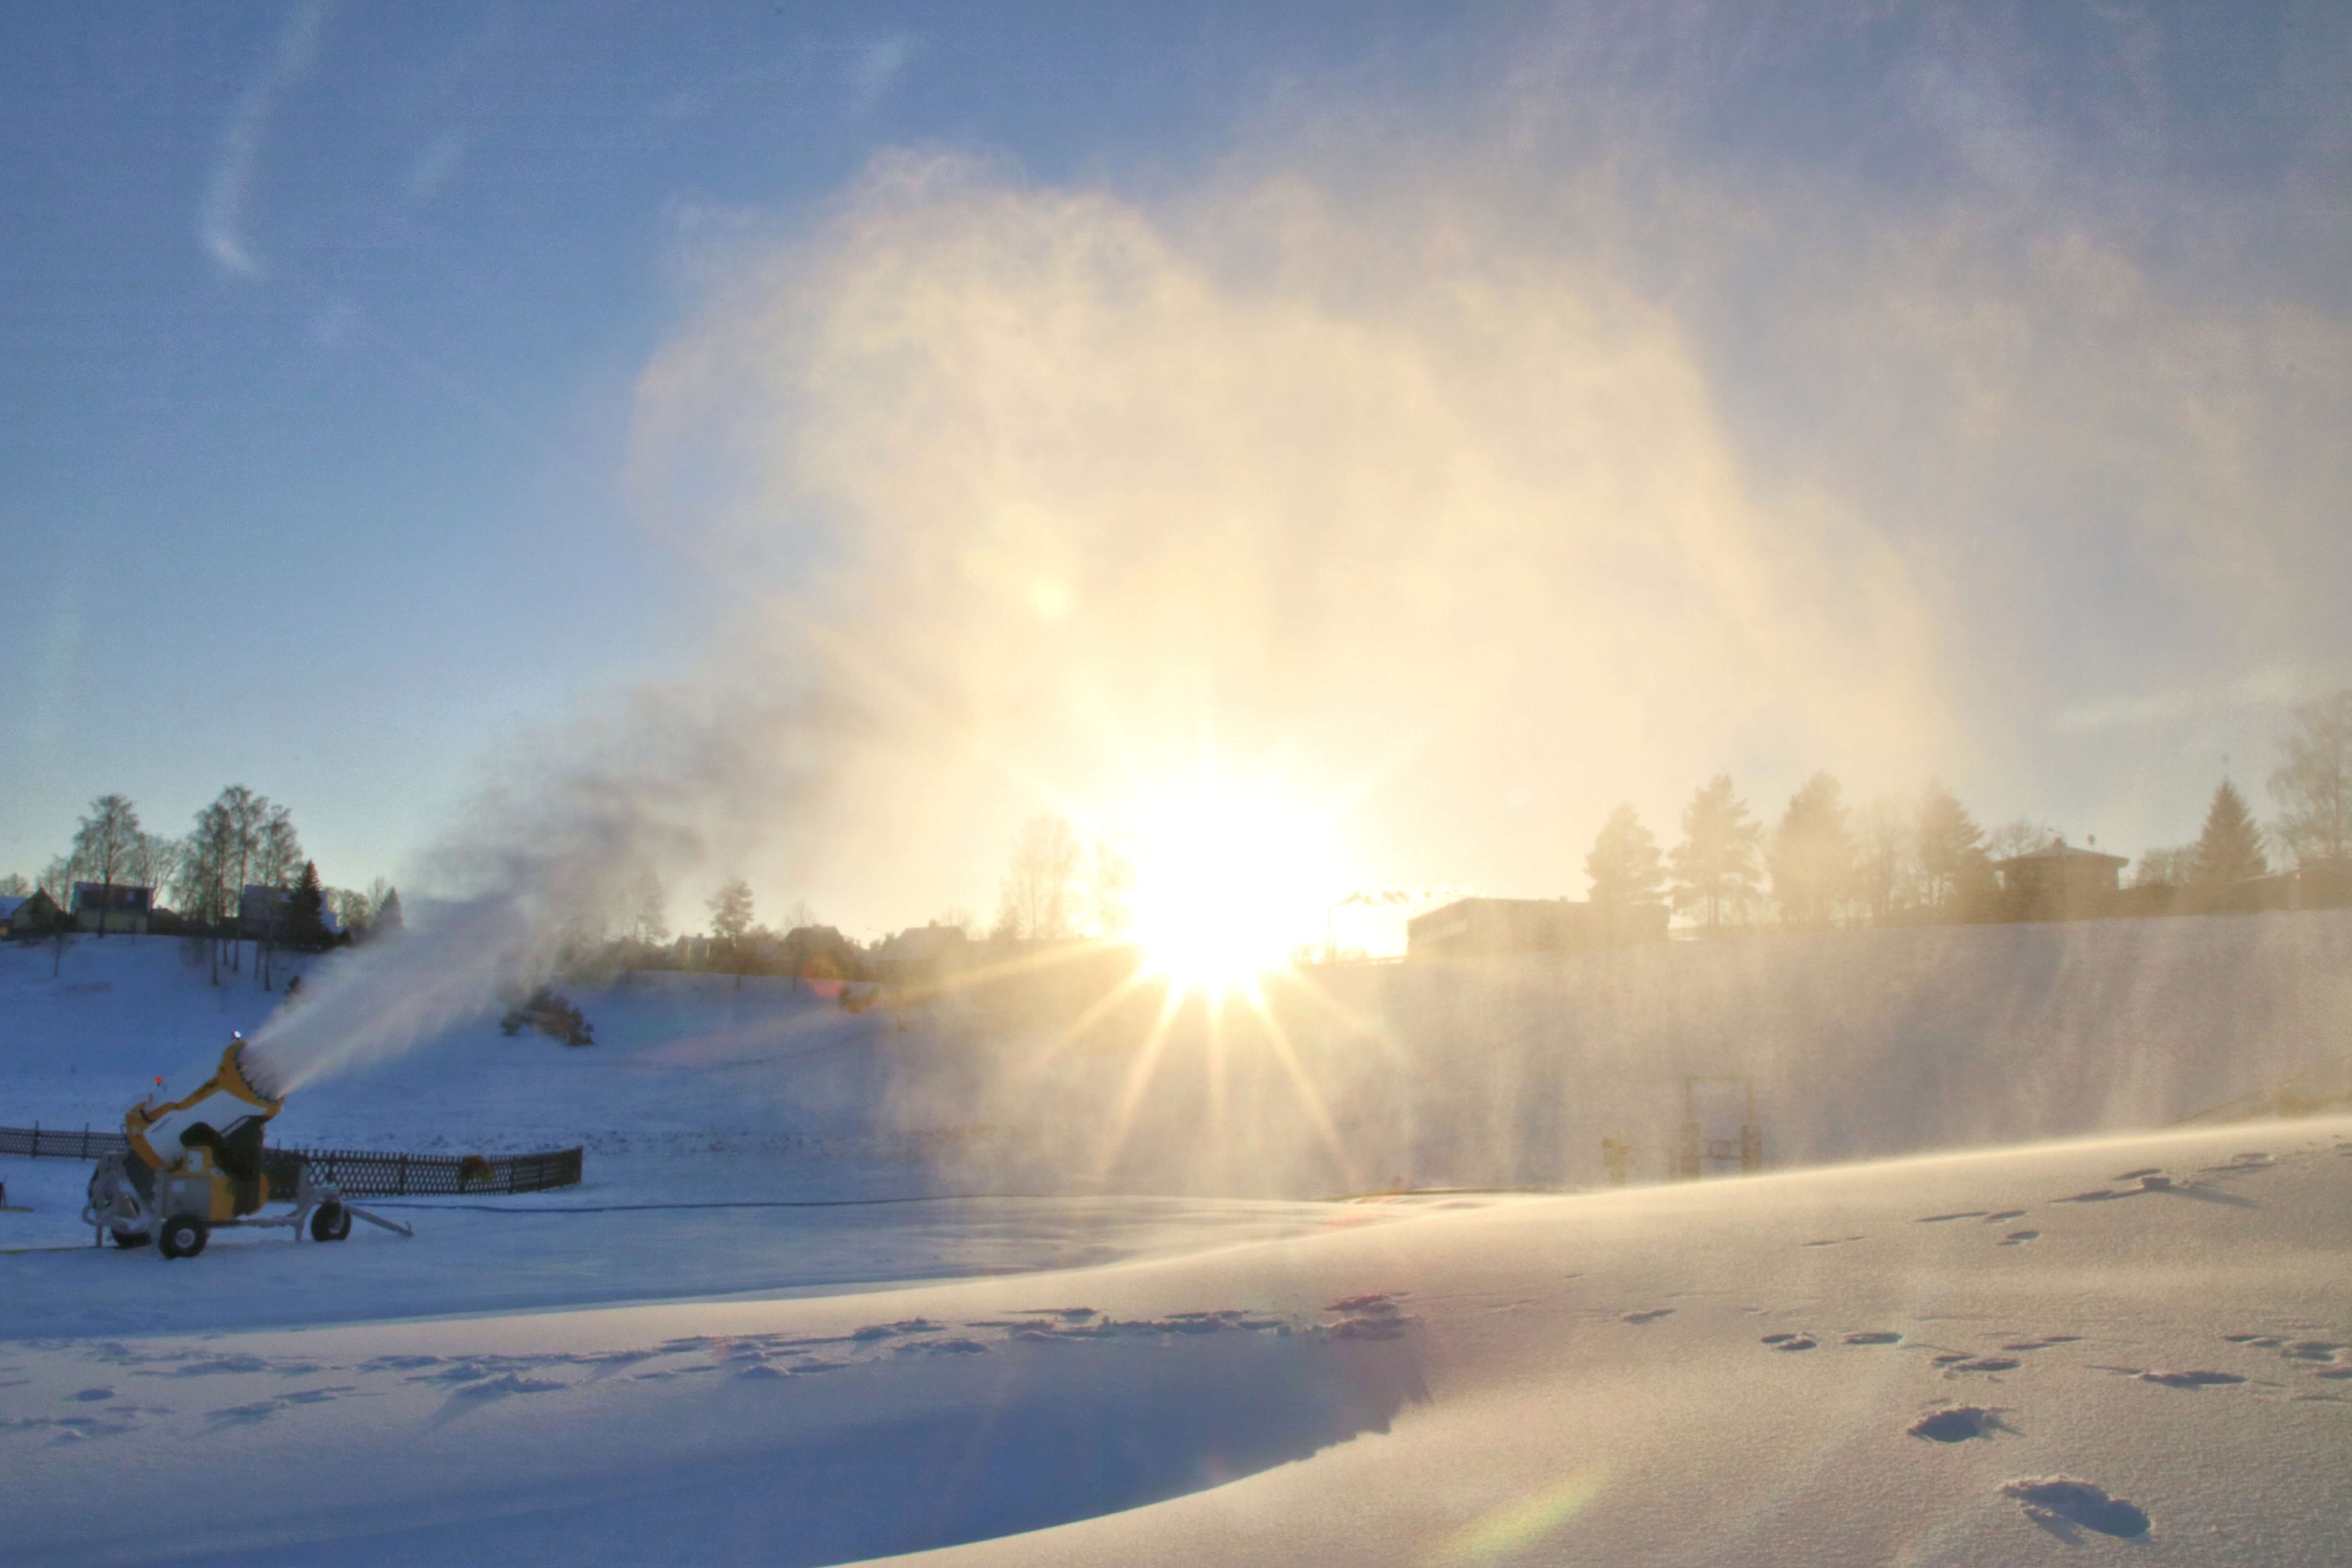 Lumetootmine Otepää Winterplace-is jaanuar 2018.a